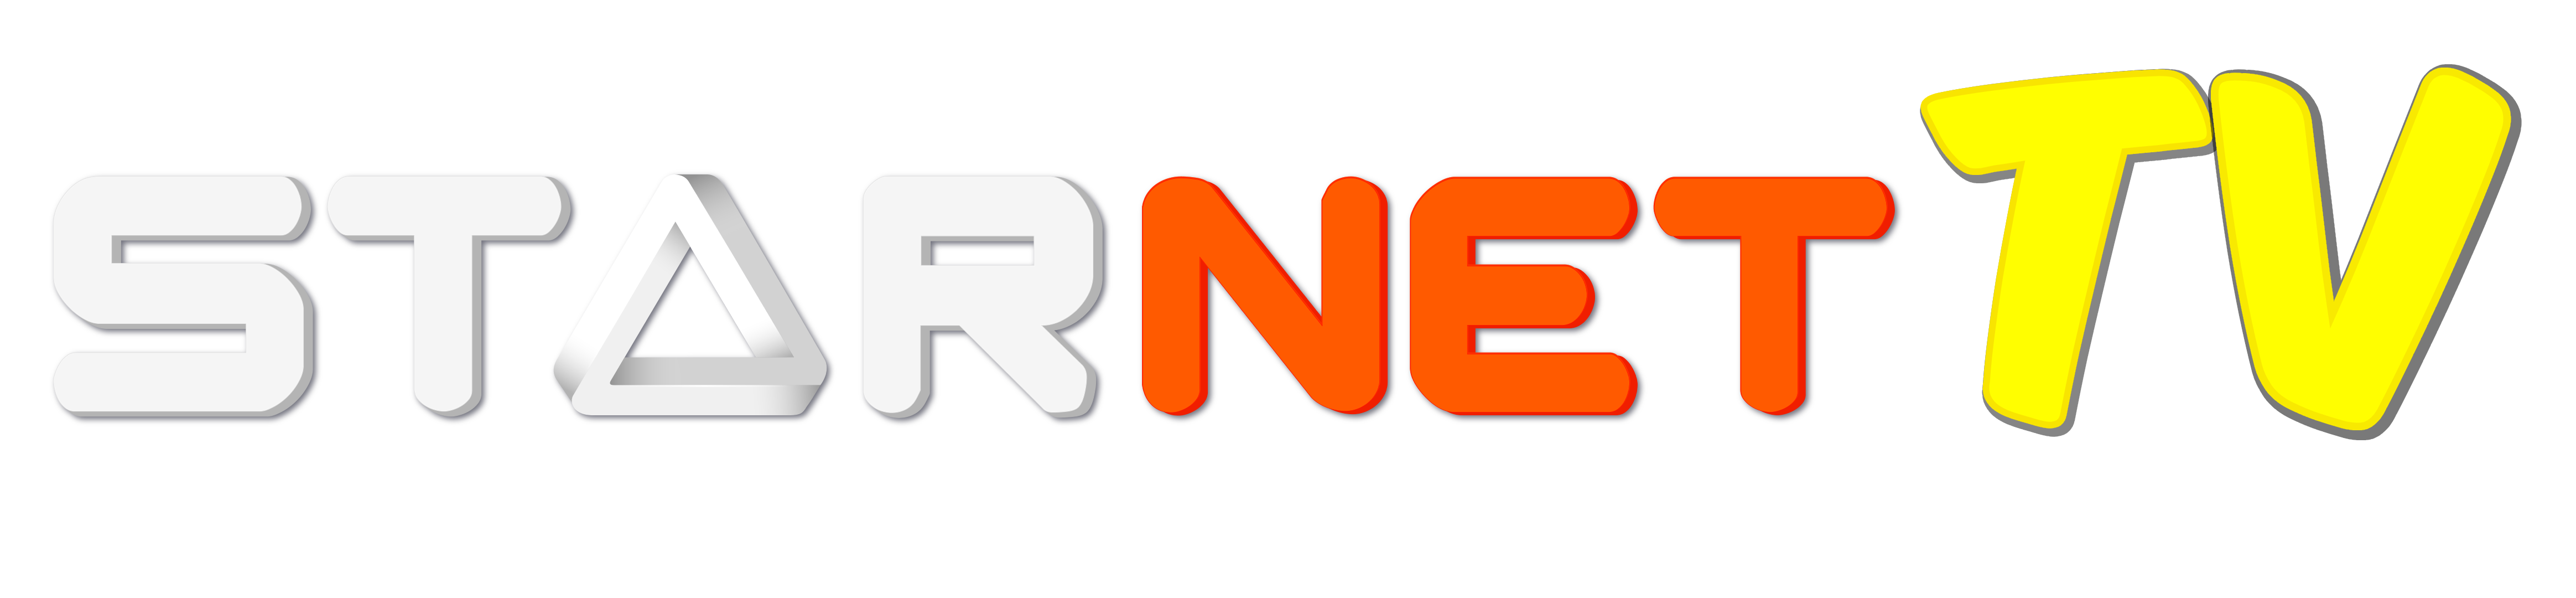 starnet TV logo (1)